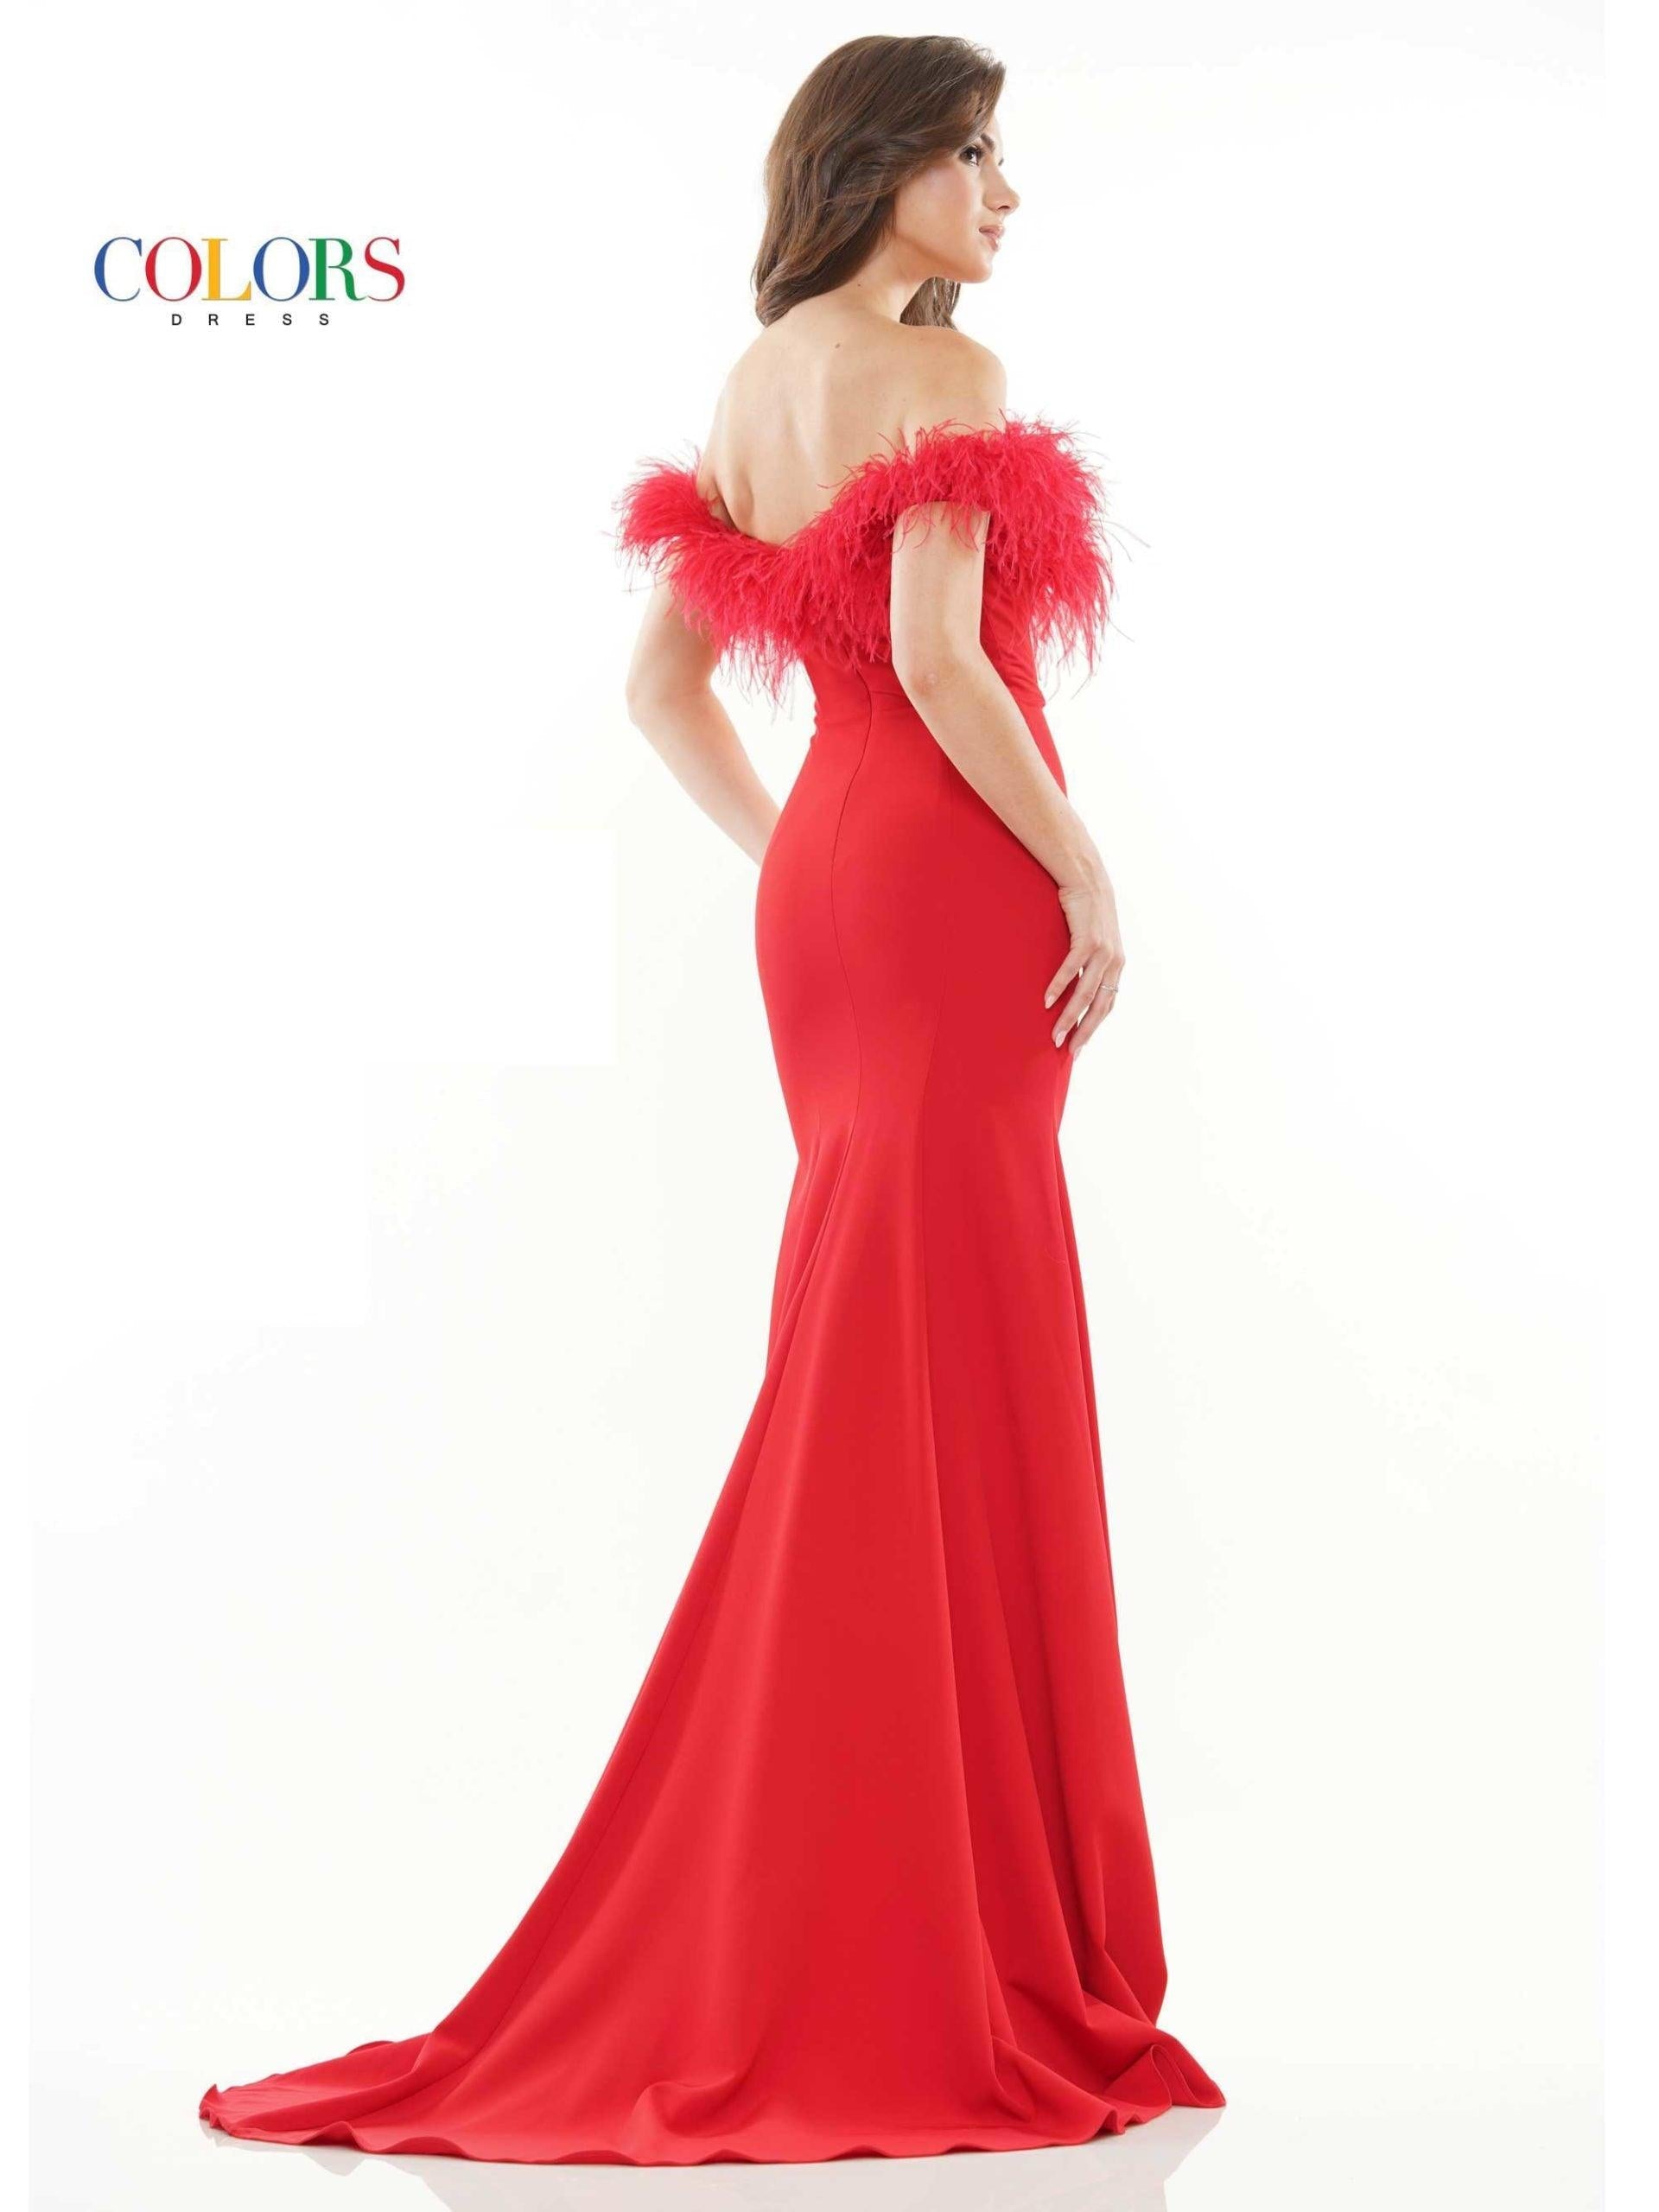 Colors Long Off Shoulder Formal Prom Dress 2663 - The Dress Outlet